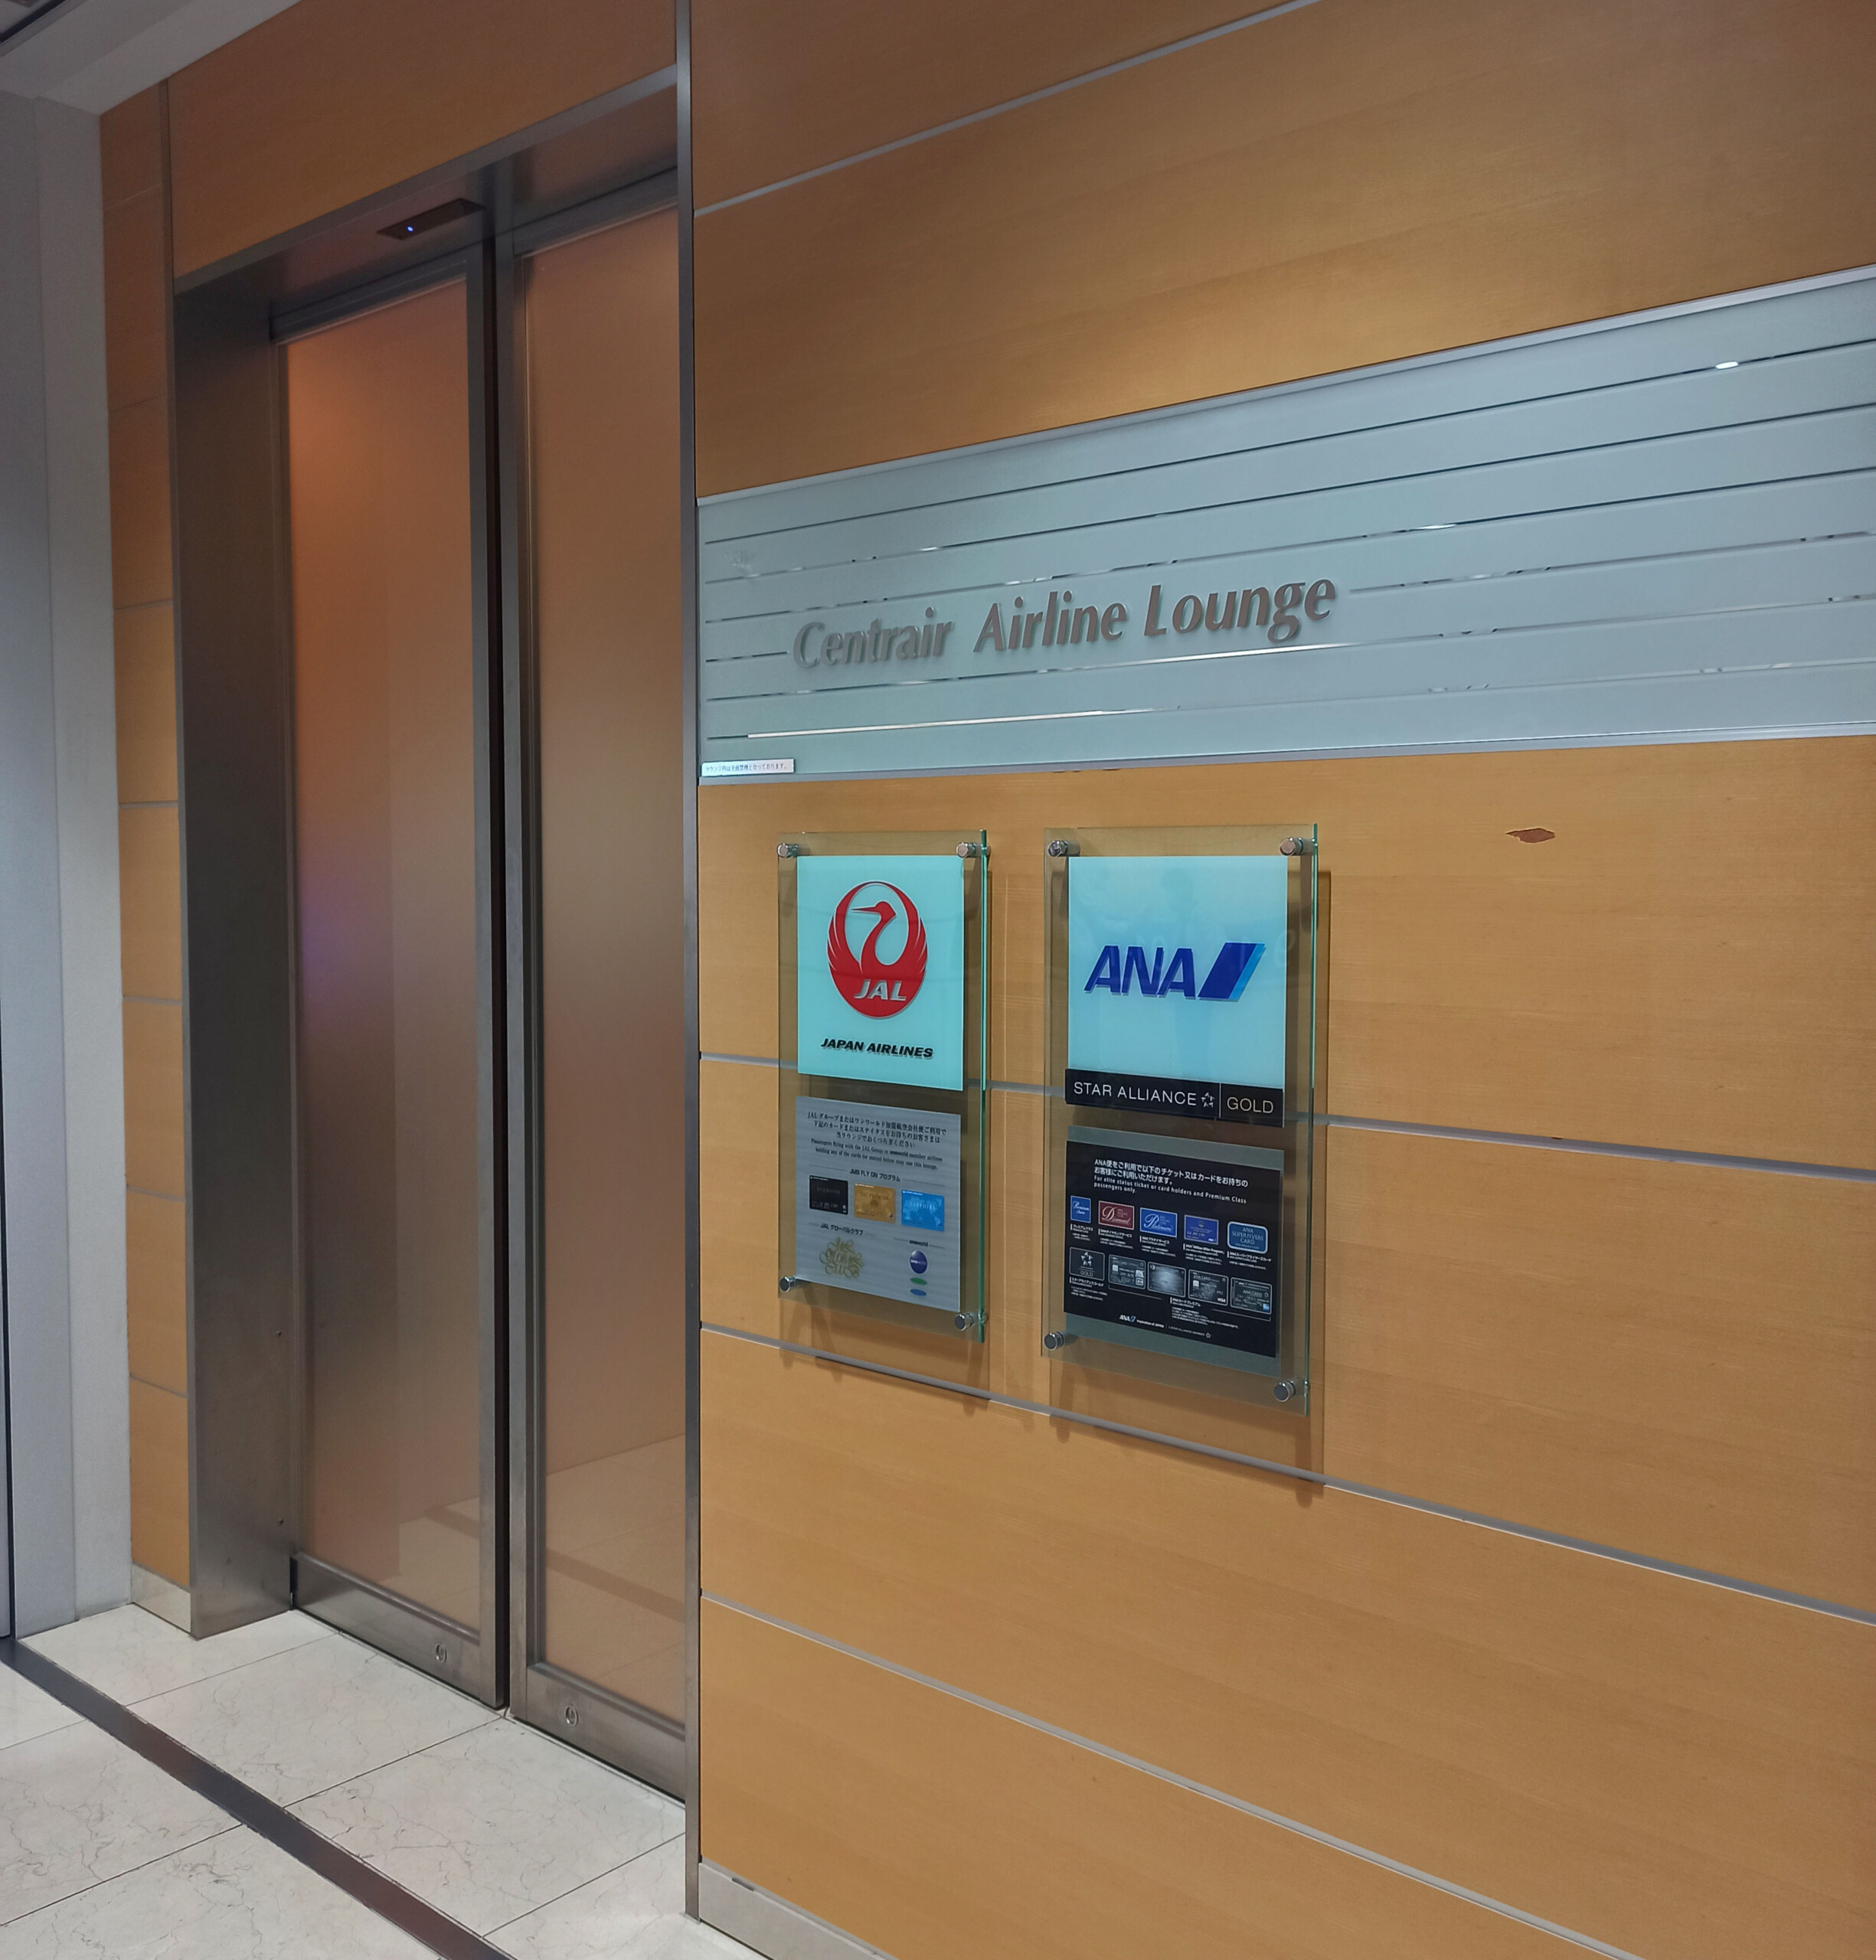 Nagoya Centrair Airline Lounge Entrance